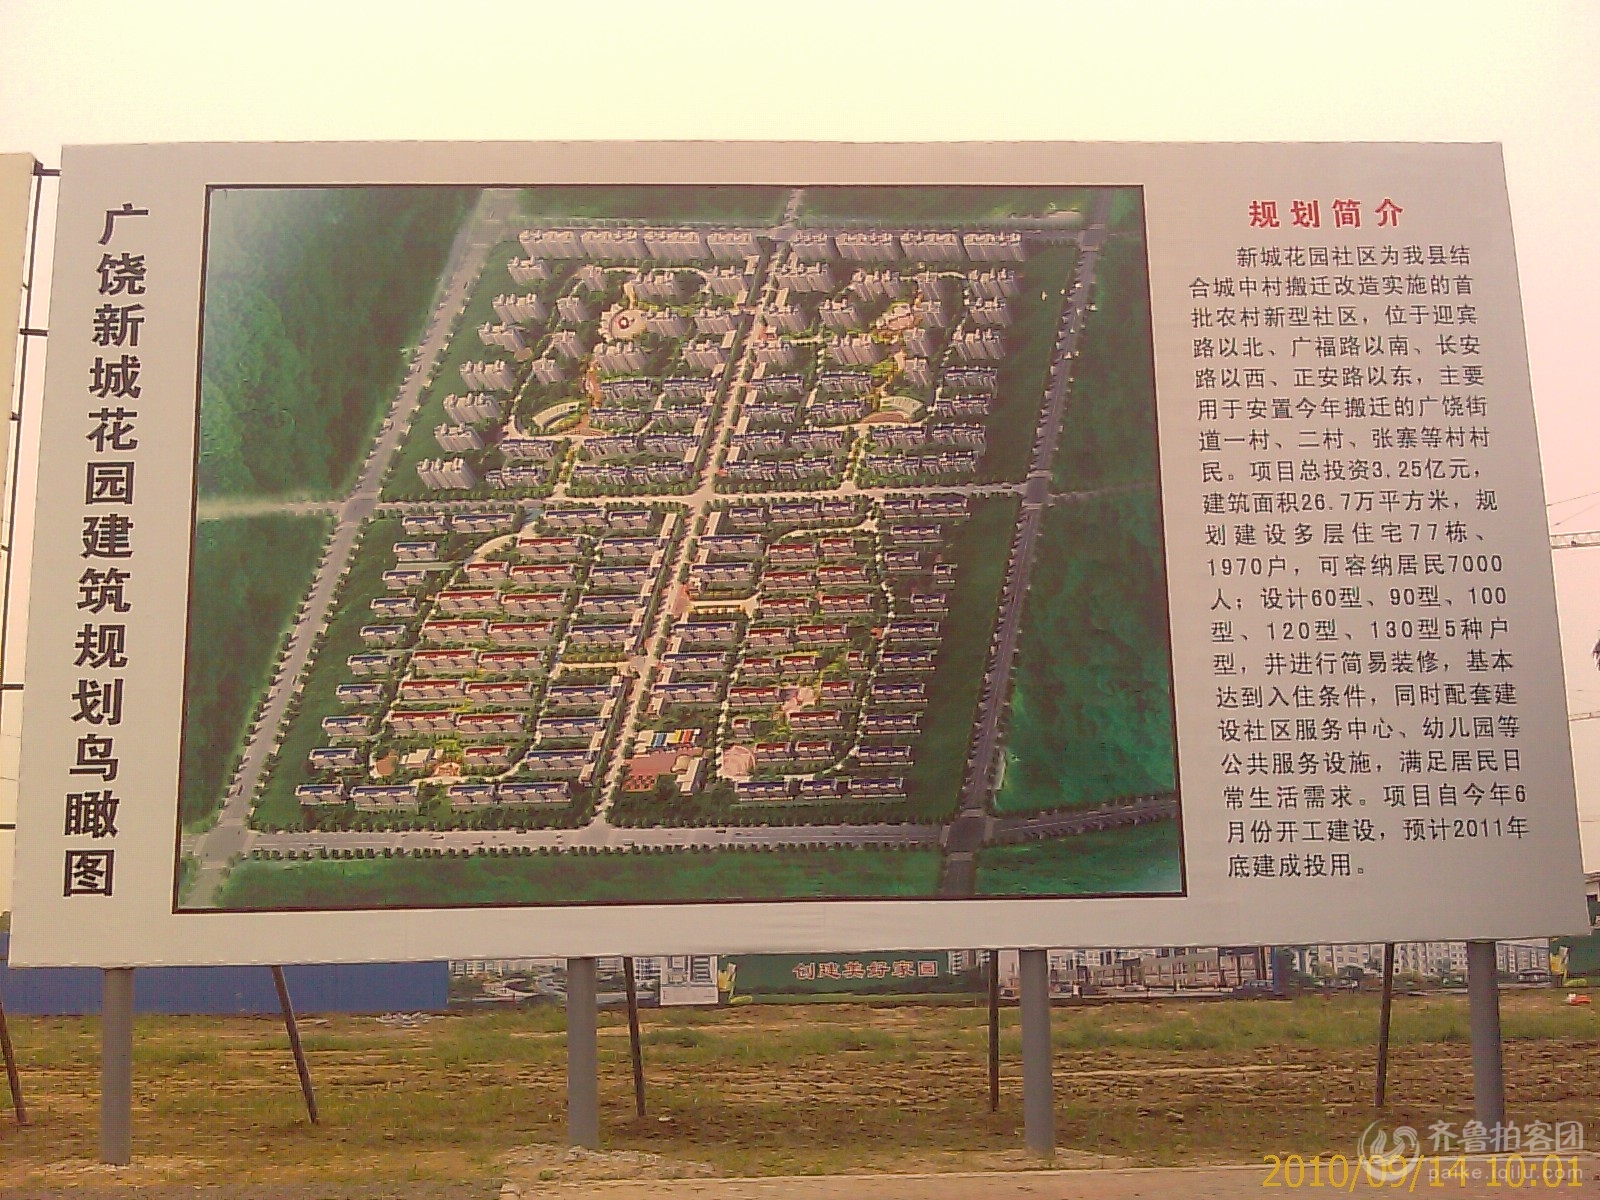 远眺建设中的广饶县新城花园小区